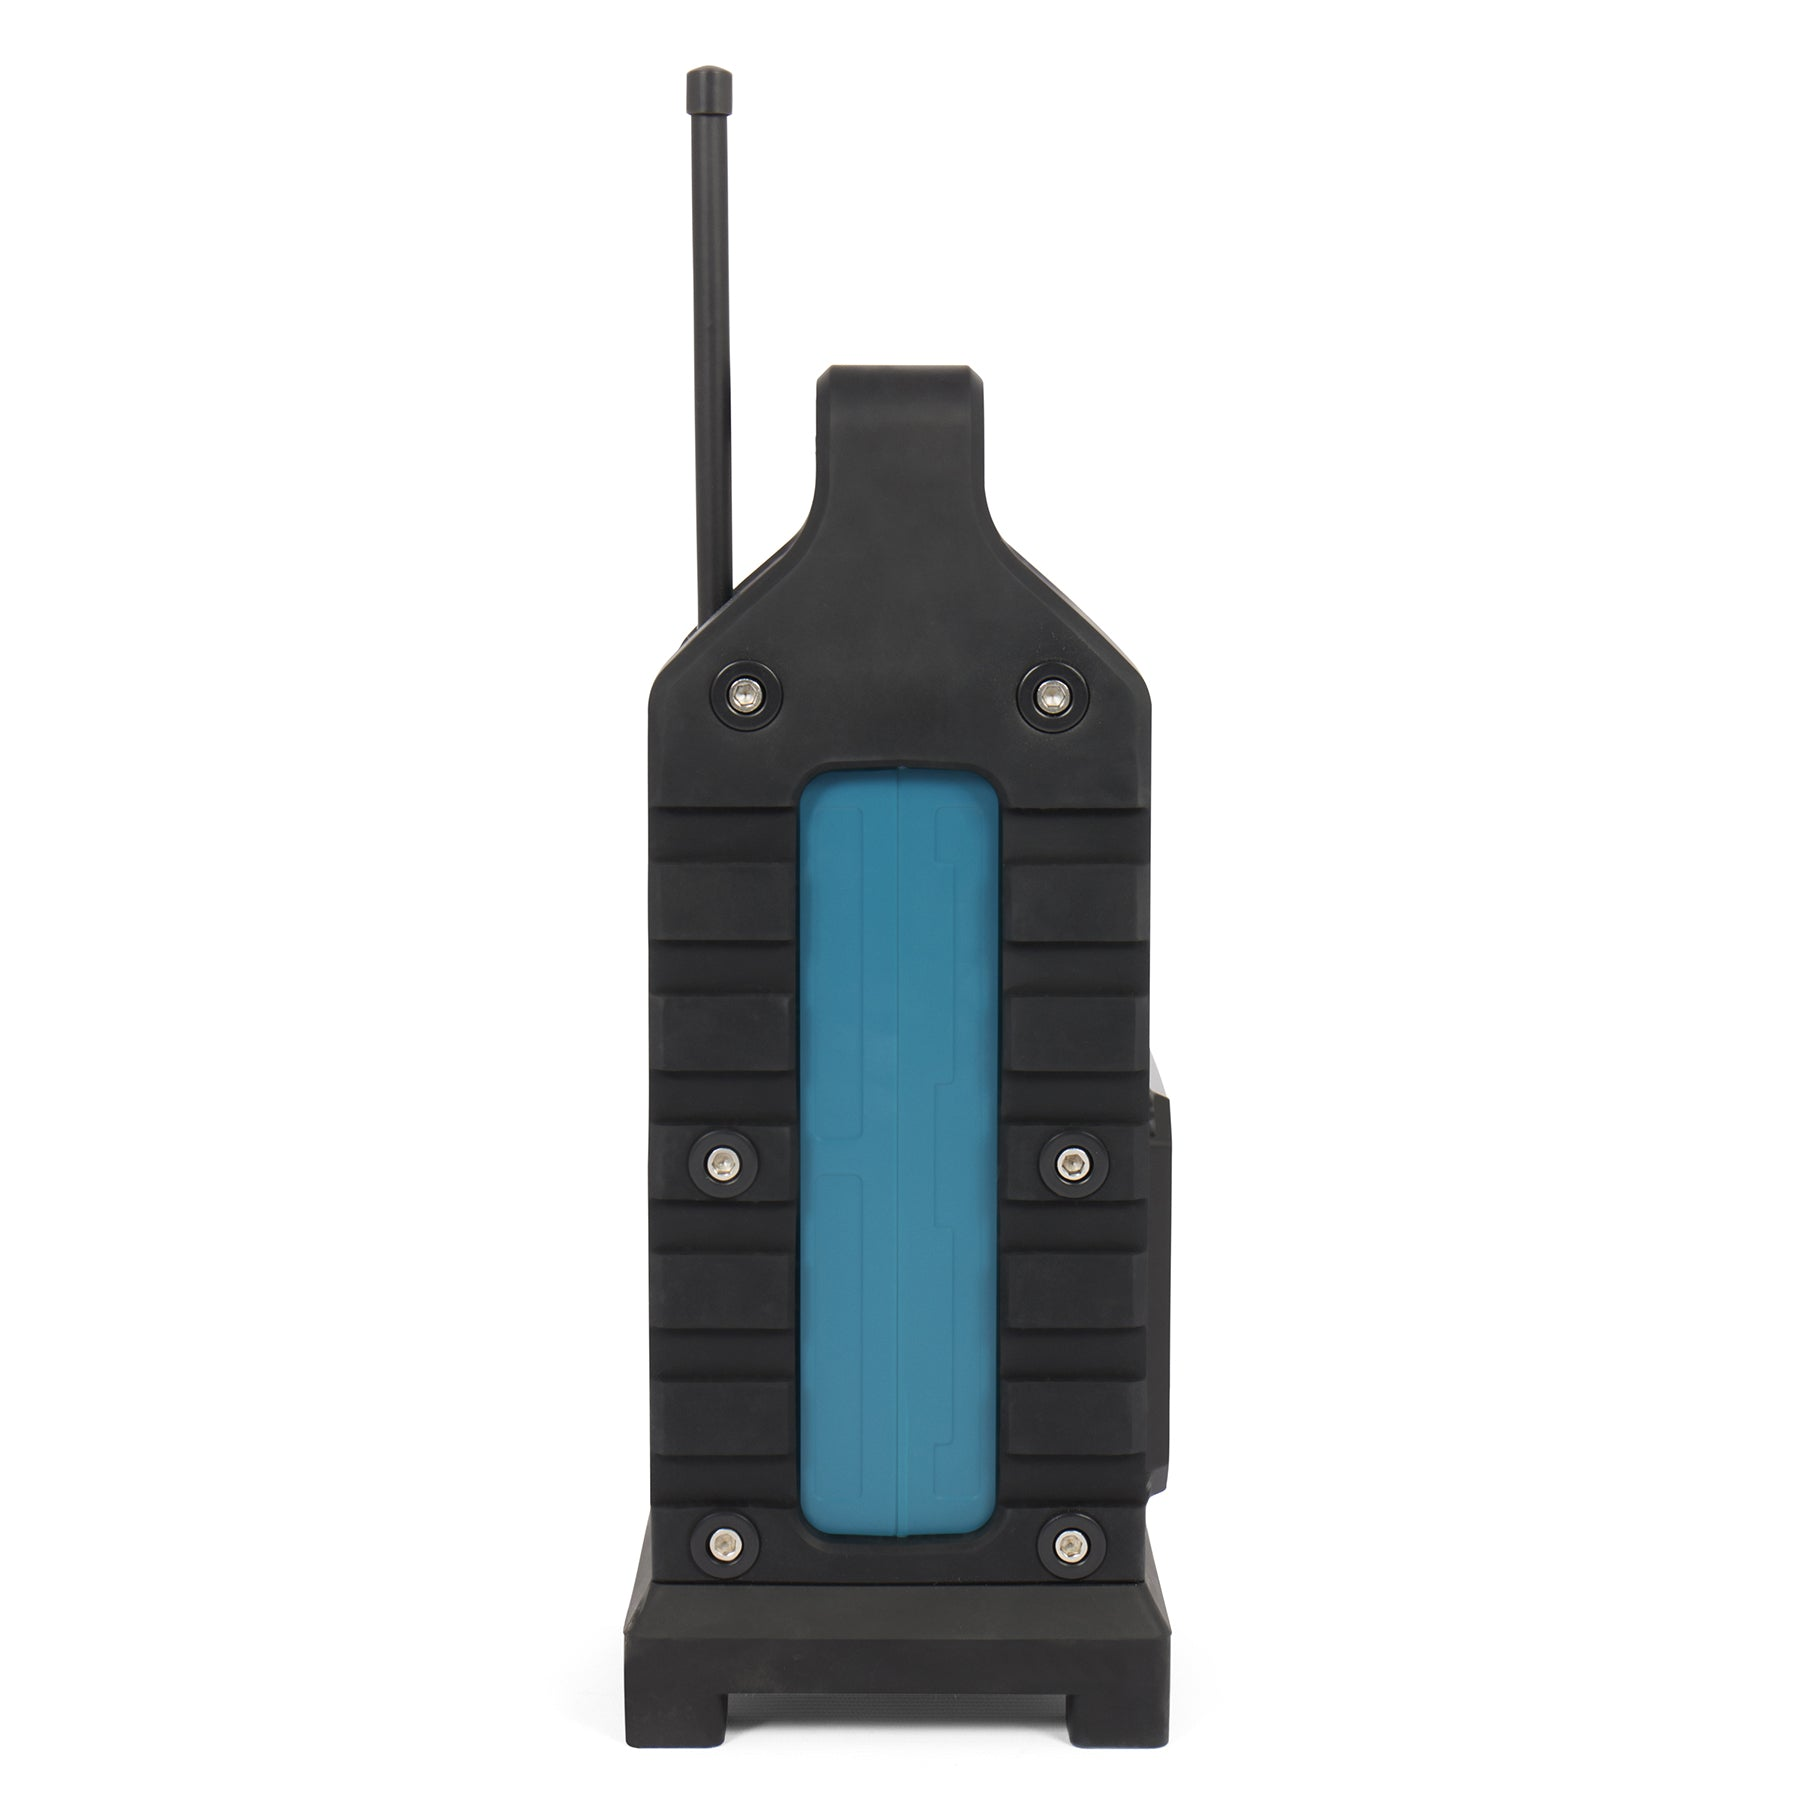 BLAUPUNKT Baustellenradio | Baustellenradio, Schwarz/Blau Bluetooth, 10 PLL FM, Tuner, BSR